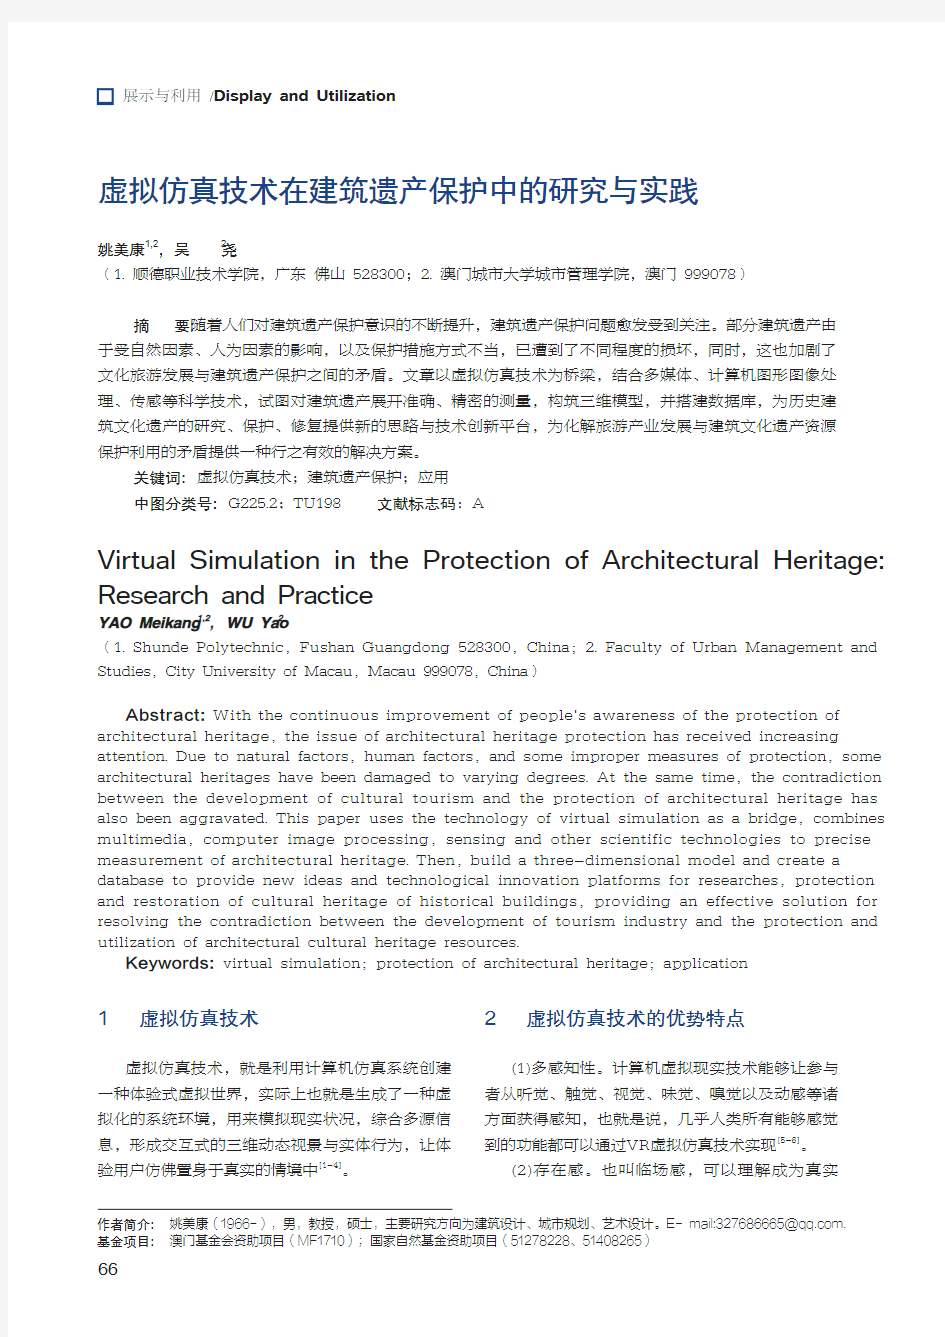 虚拟仿真技术在建筑遗产保护中的研究与实践